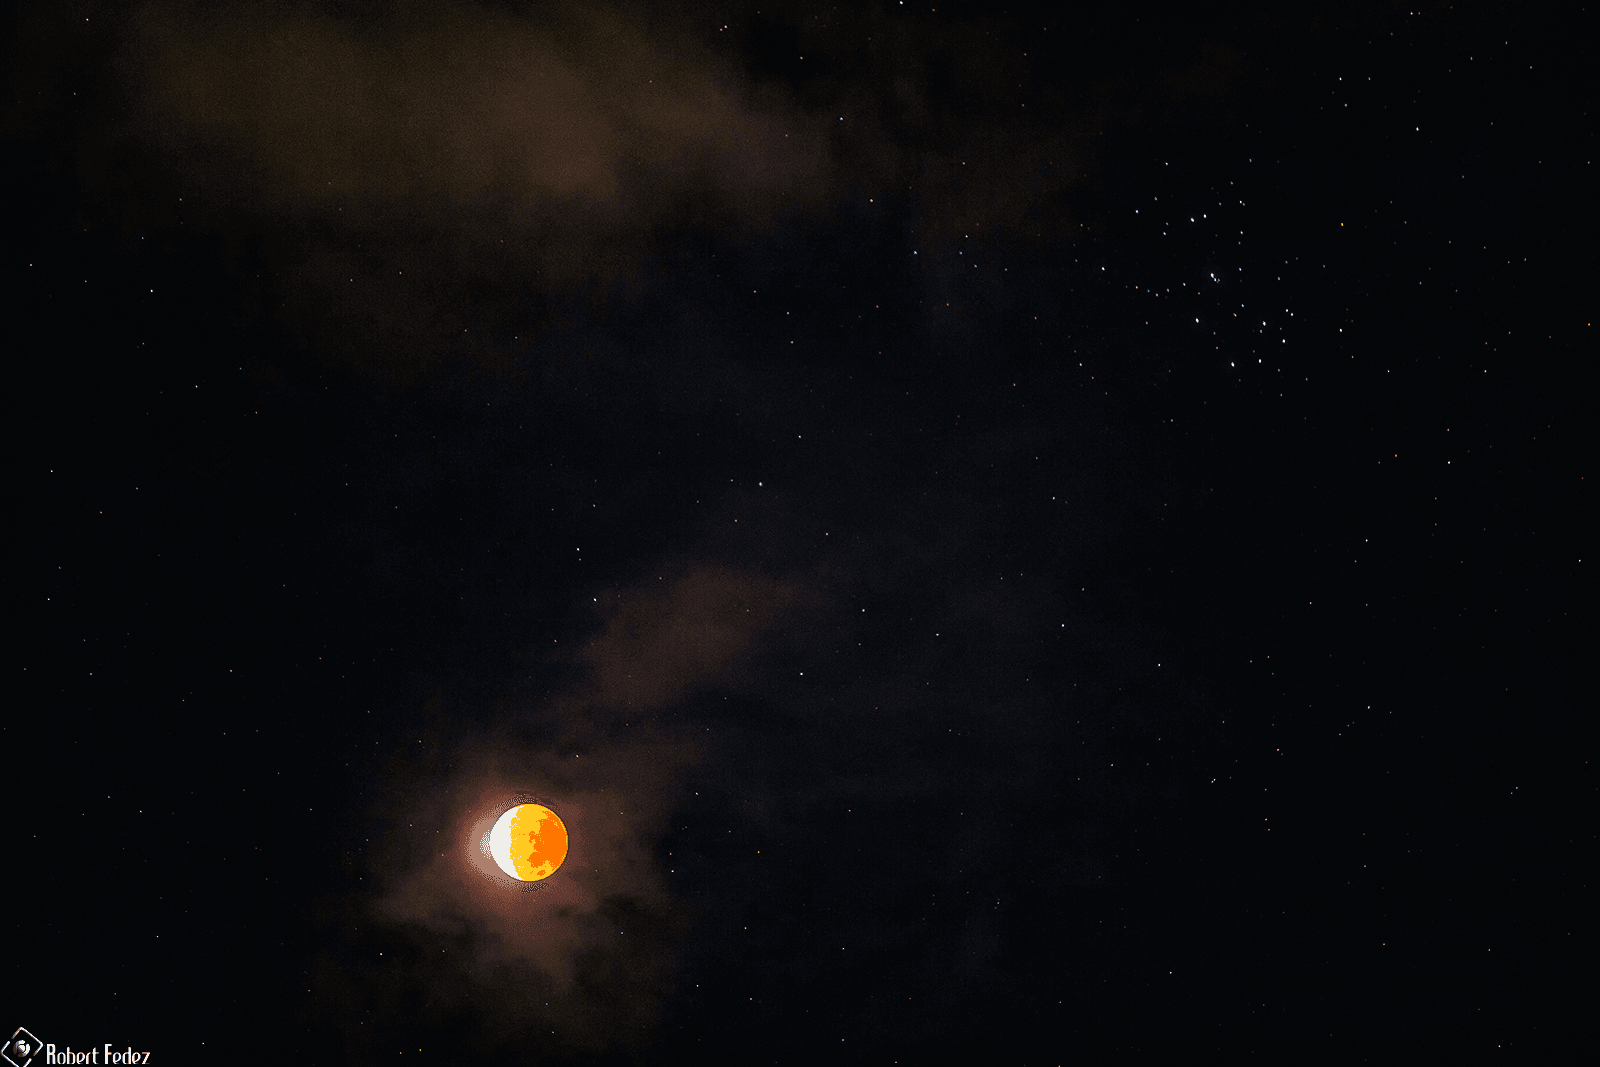 قمر مخسوف كلّيّاً تقريباً يظهر بلون محمرّ في سماءٍ تتخلّلها بعض السحب وترصّعها الكثير من النجوم من بينها نجوم عنقود الثريّا.